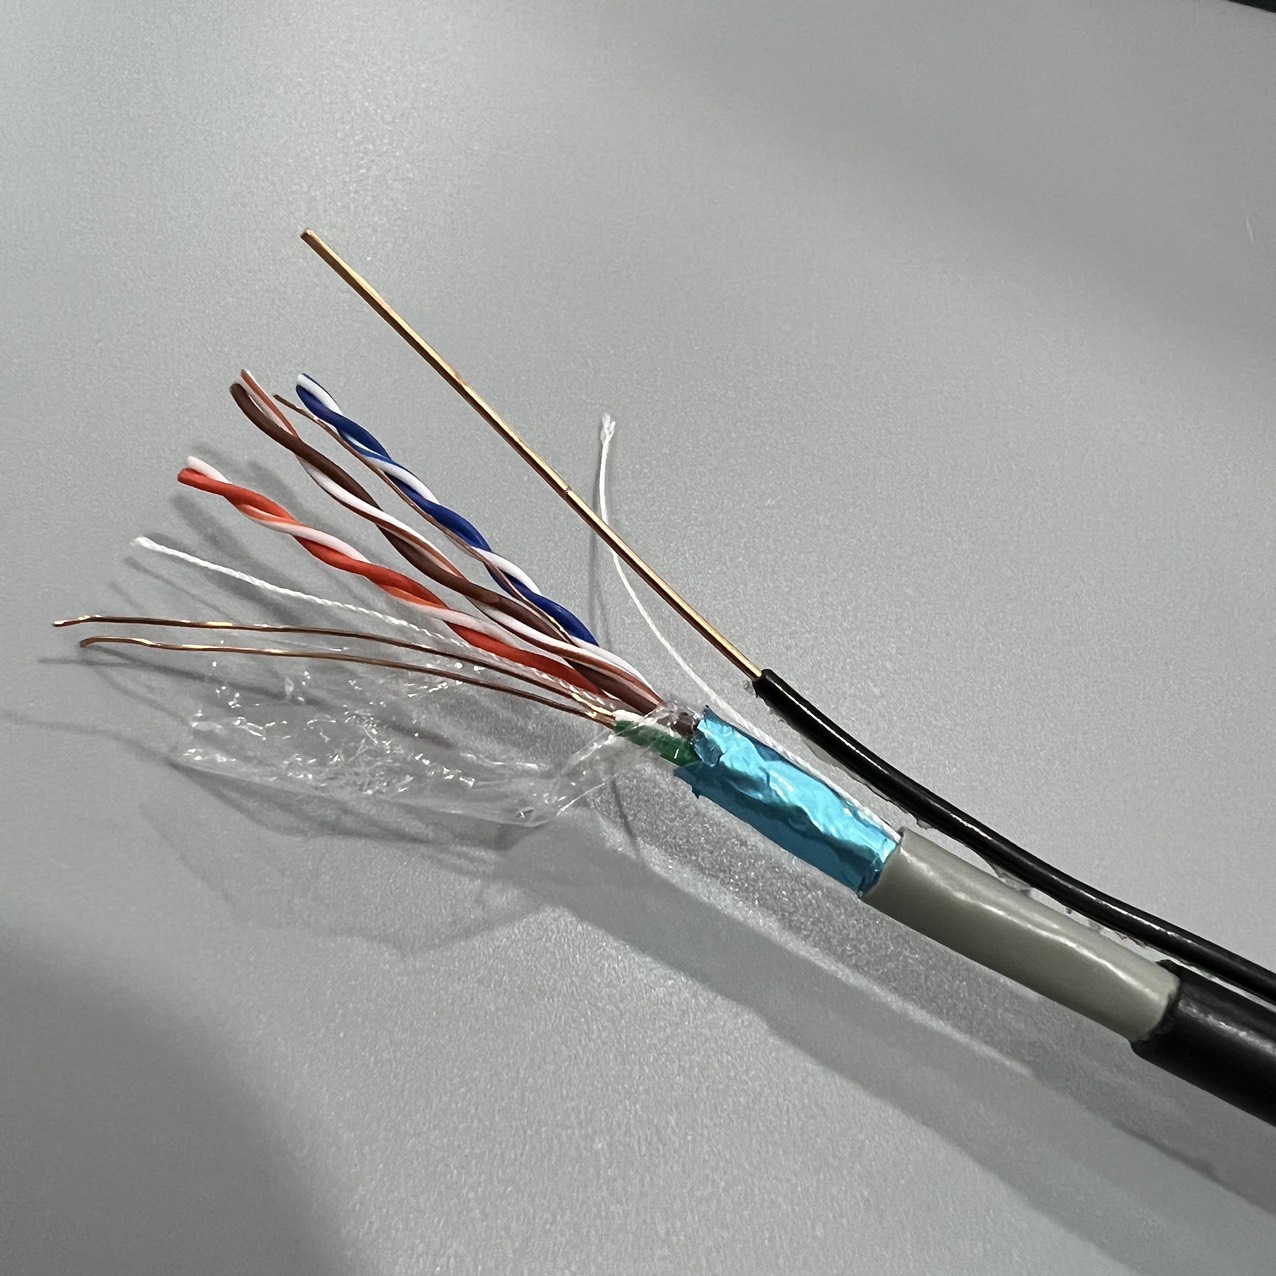 Annam phân phối cáp mạng Cat5e lõi đồng Copper, cáp mạng Cat7 SSTP bọc bạc lưới thép hãng TE-KRONE